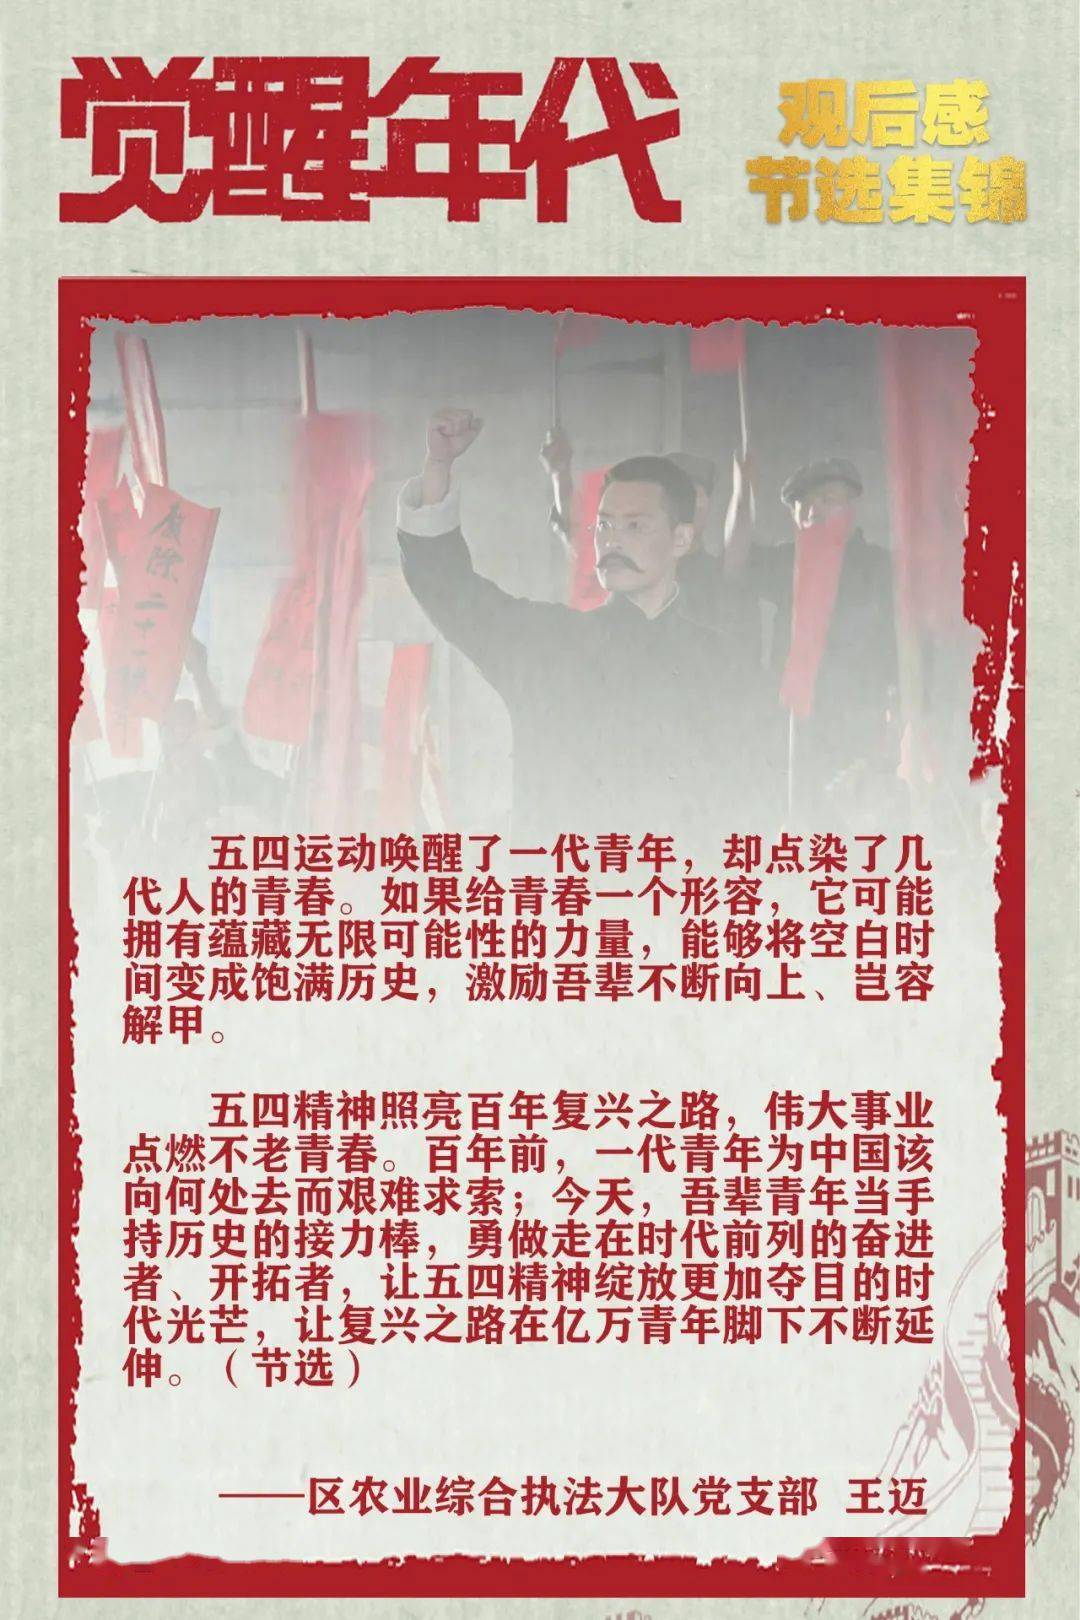 【党史学习】"回首红色百年·感悟"——区农业农村局《觉醒年代》